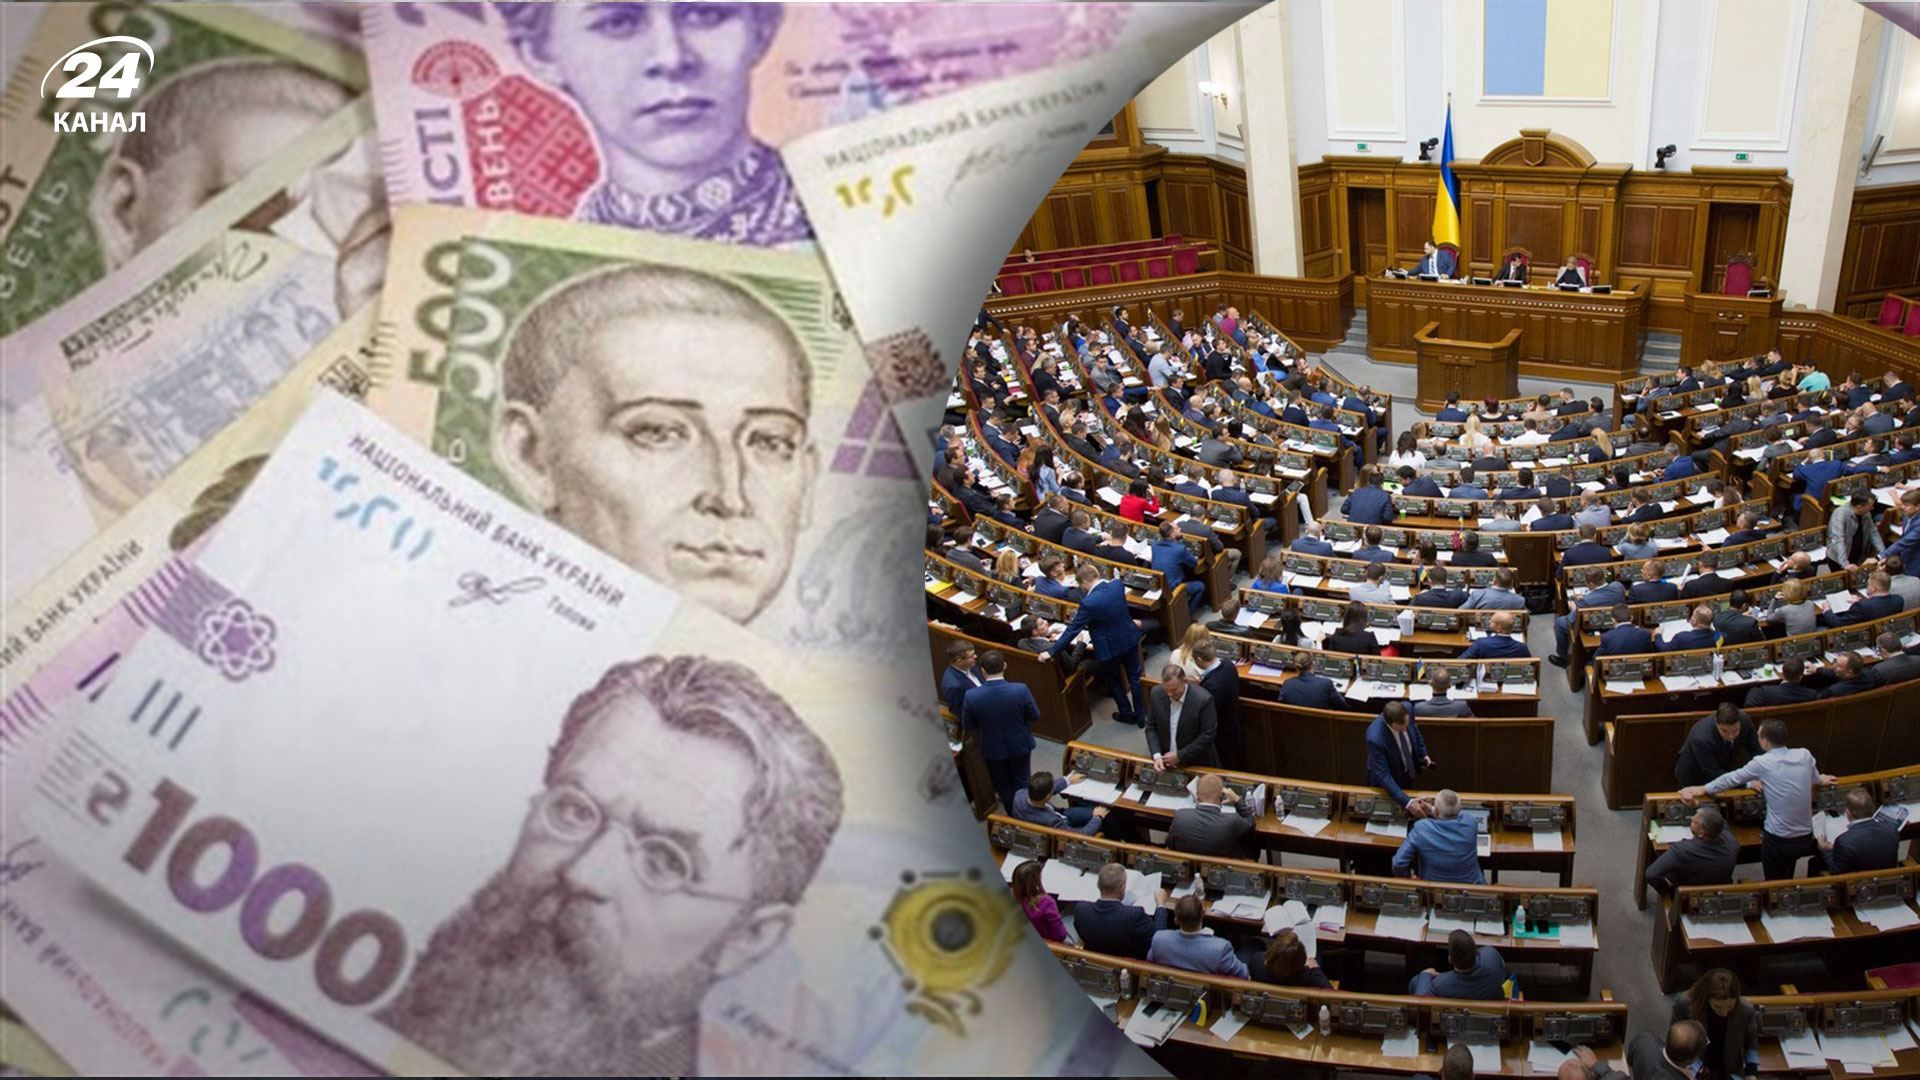 Рада поддержала изменения в бюджет: на "єПідтримку" передадут 5,8 миллиарда гривен